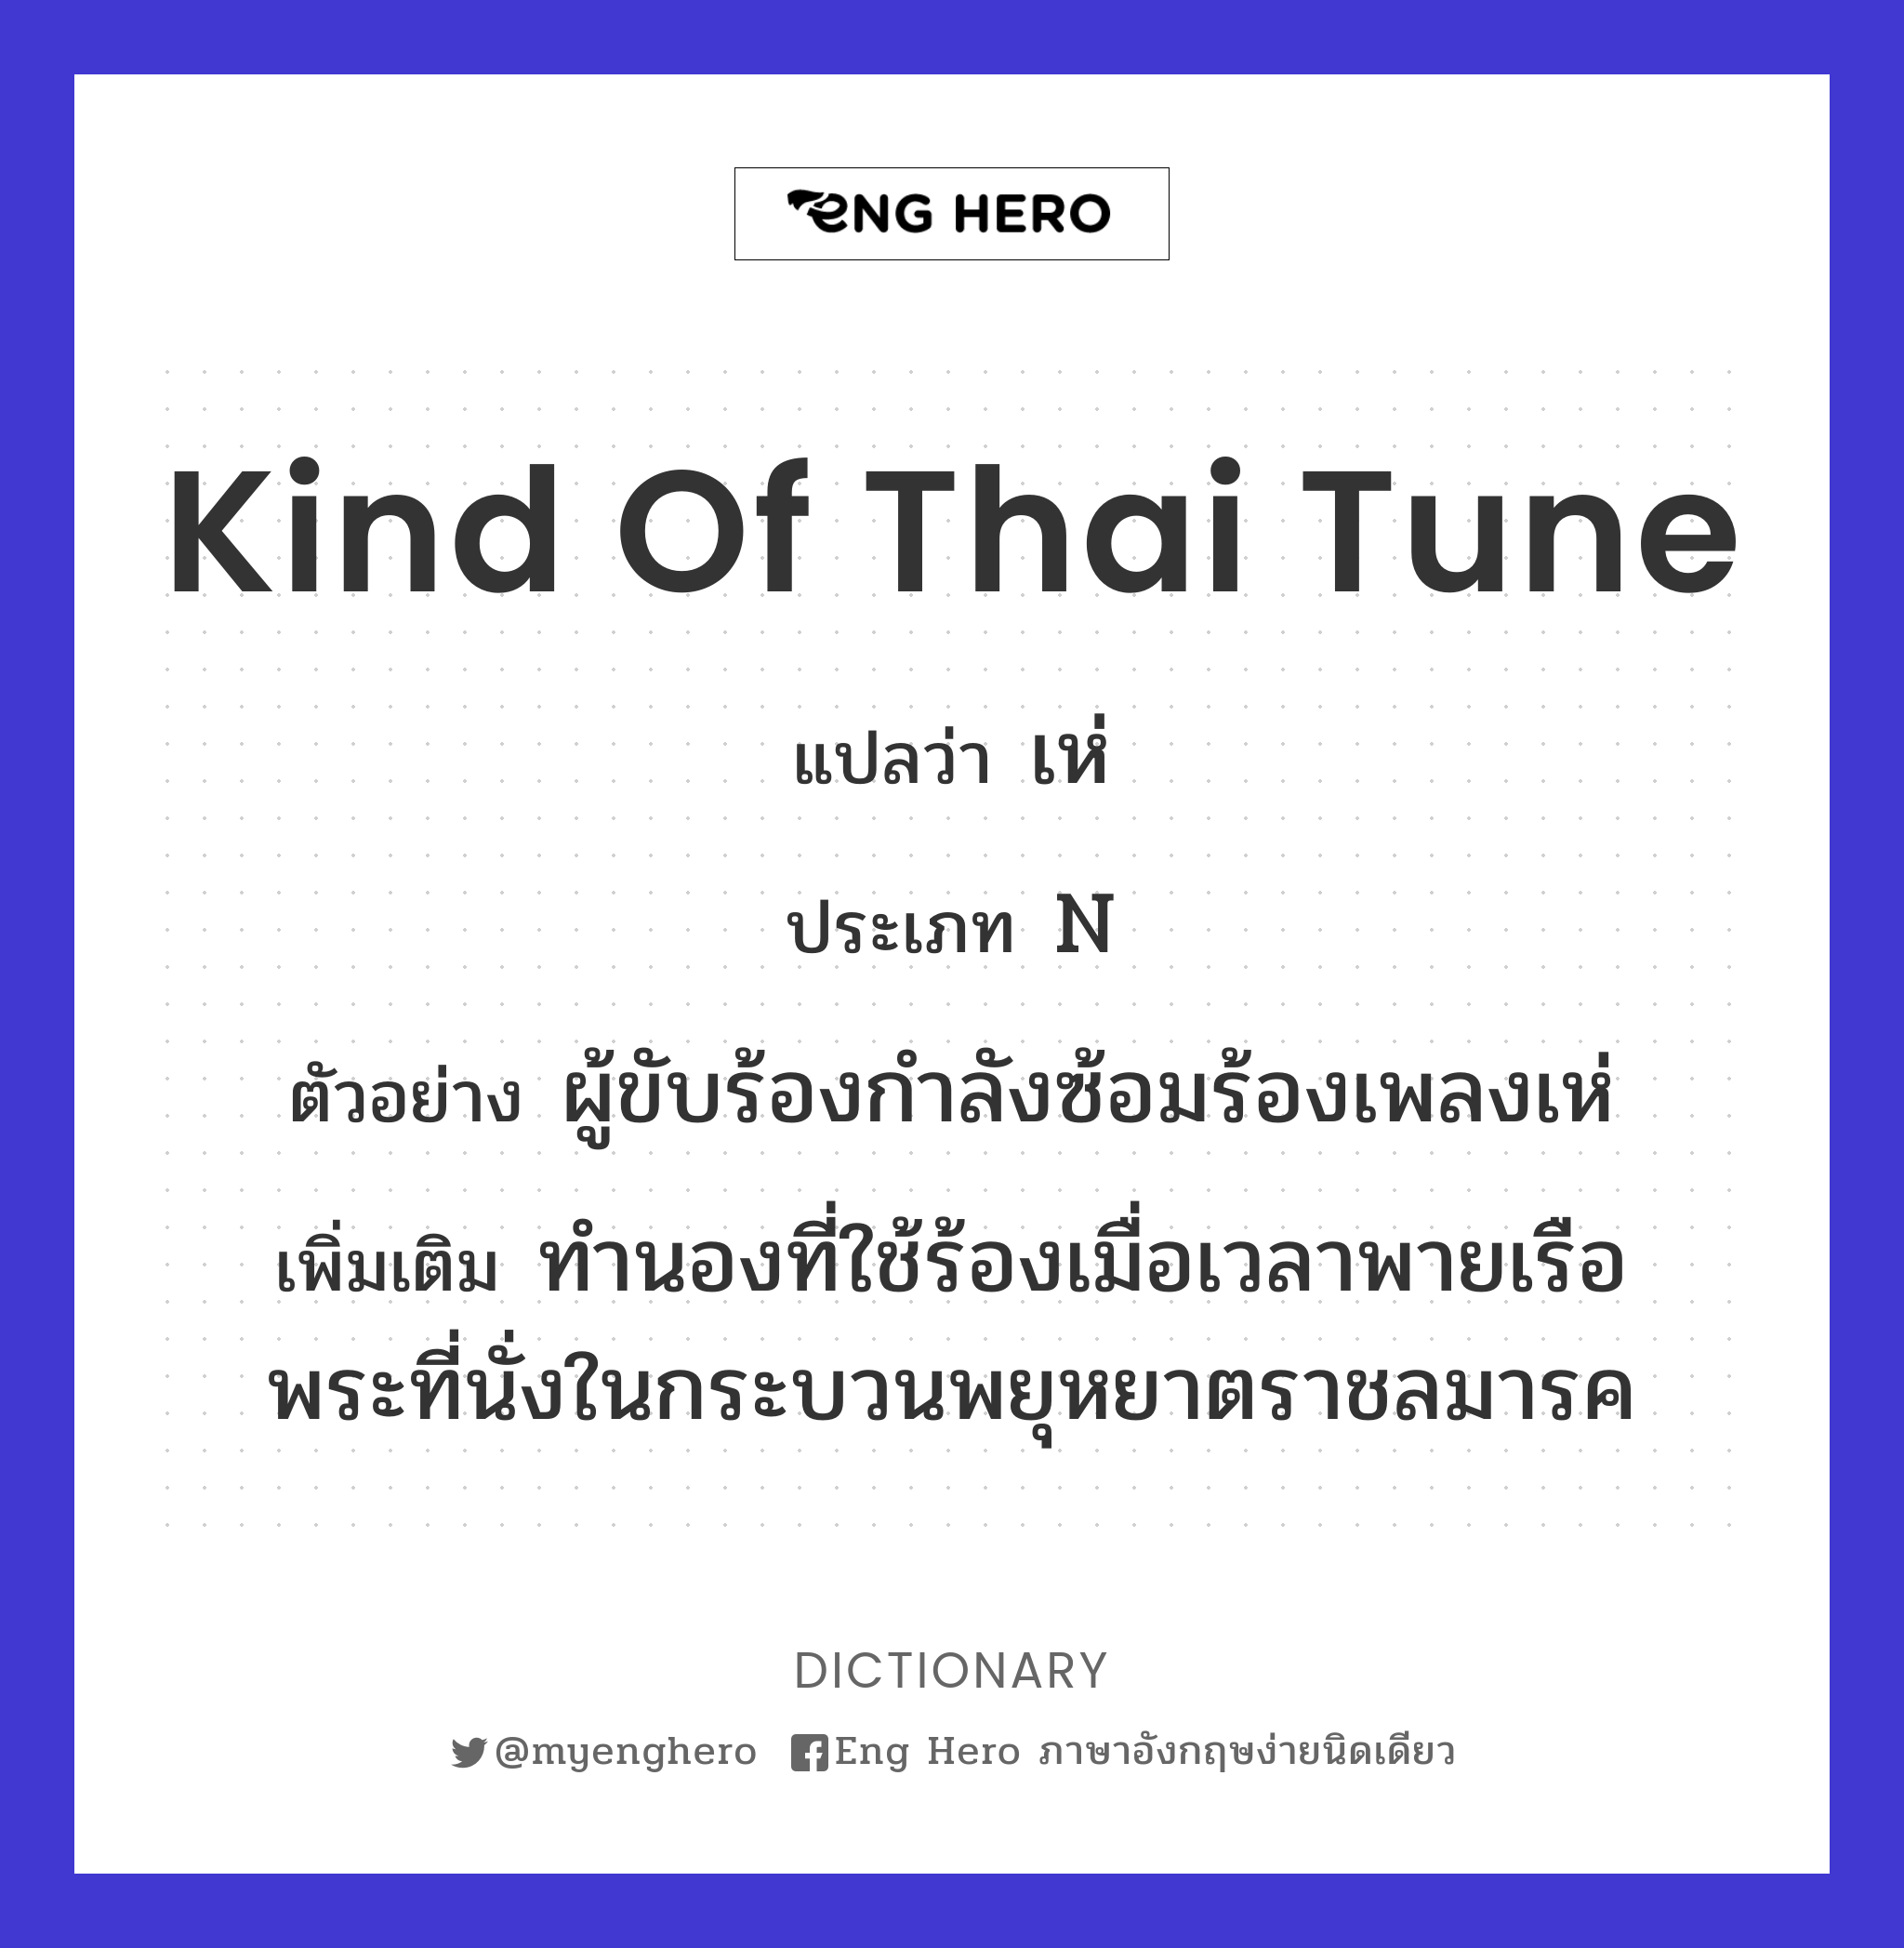 kind of Thai tune